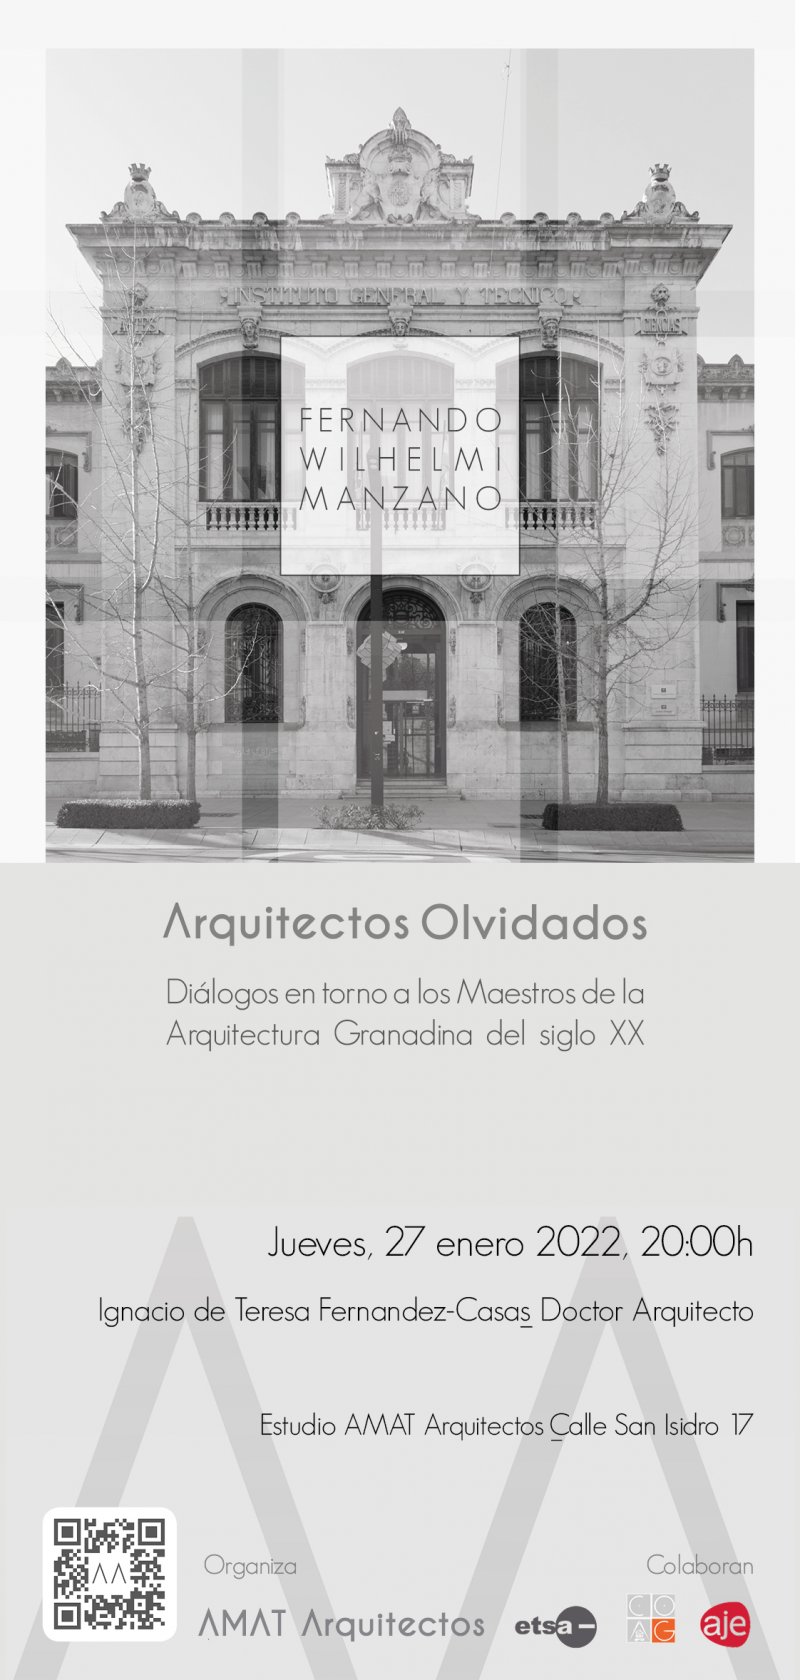 Cartel de la exposición "Arquitectos Olvidados"